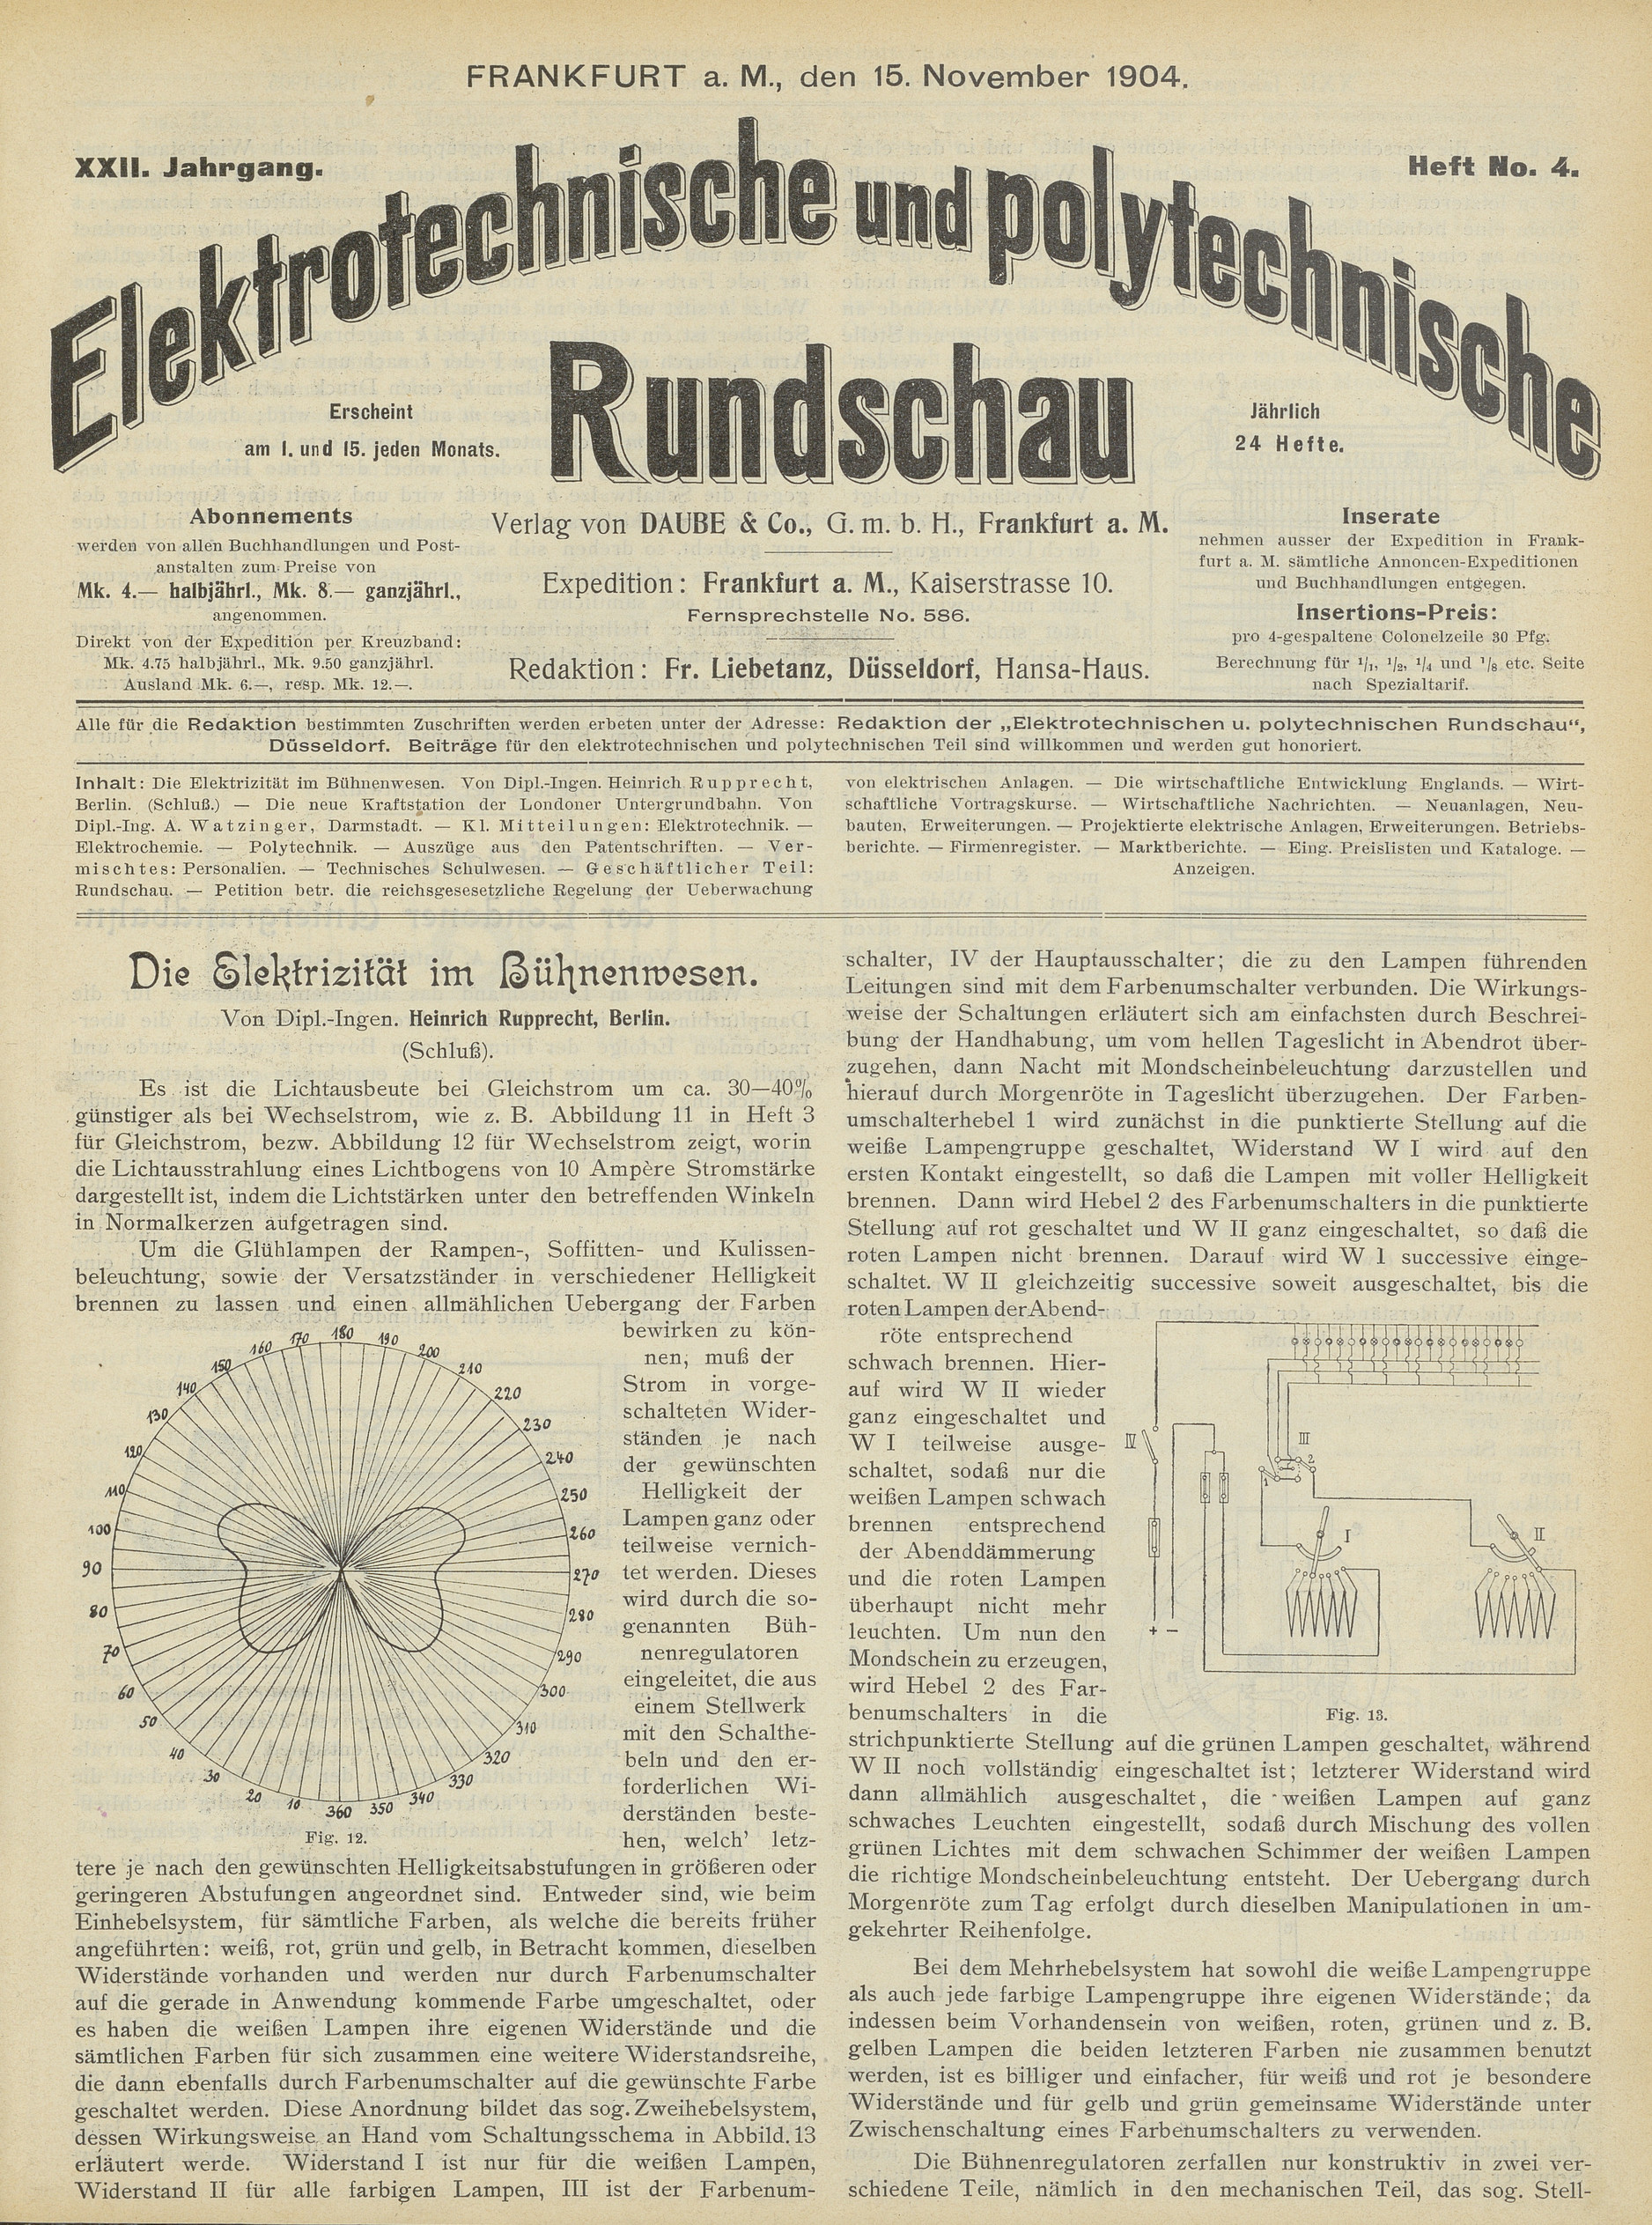 Elektrotechnische und polytechnische Rundschau, XXII. Jahrgang, Heft No. 4